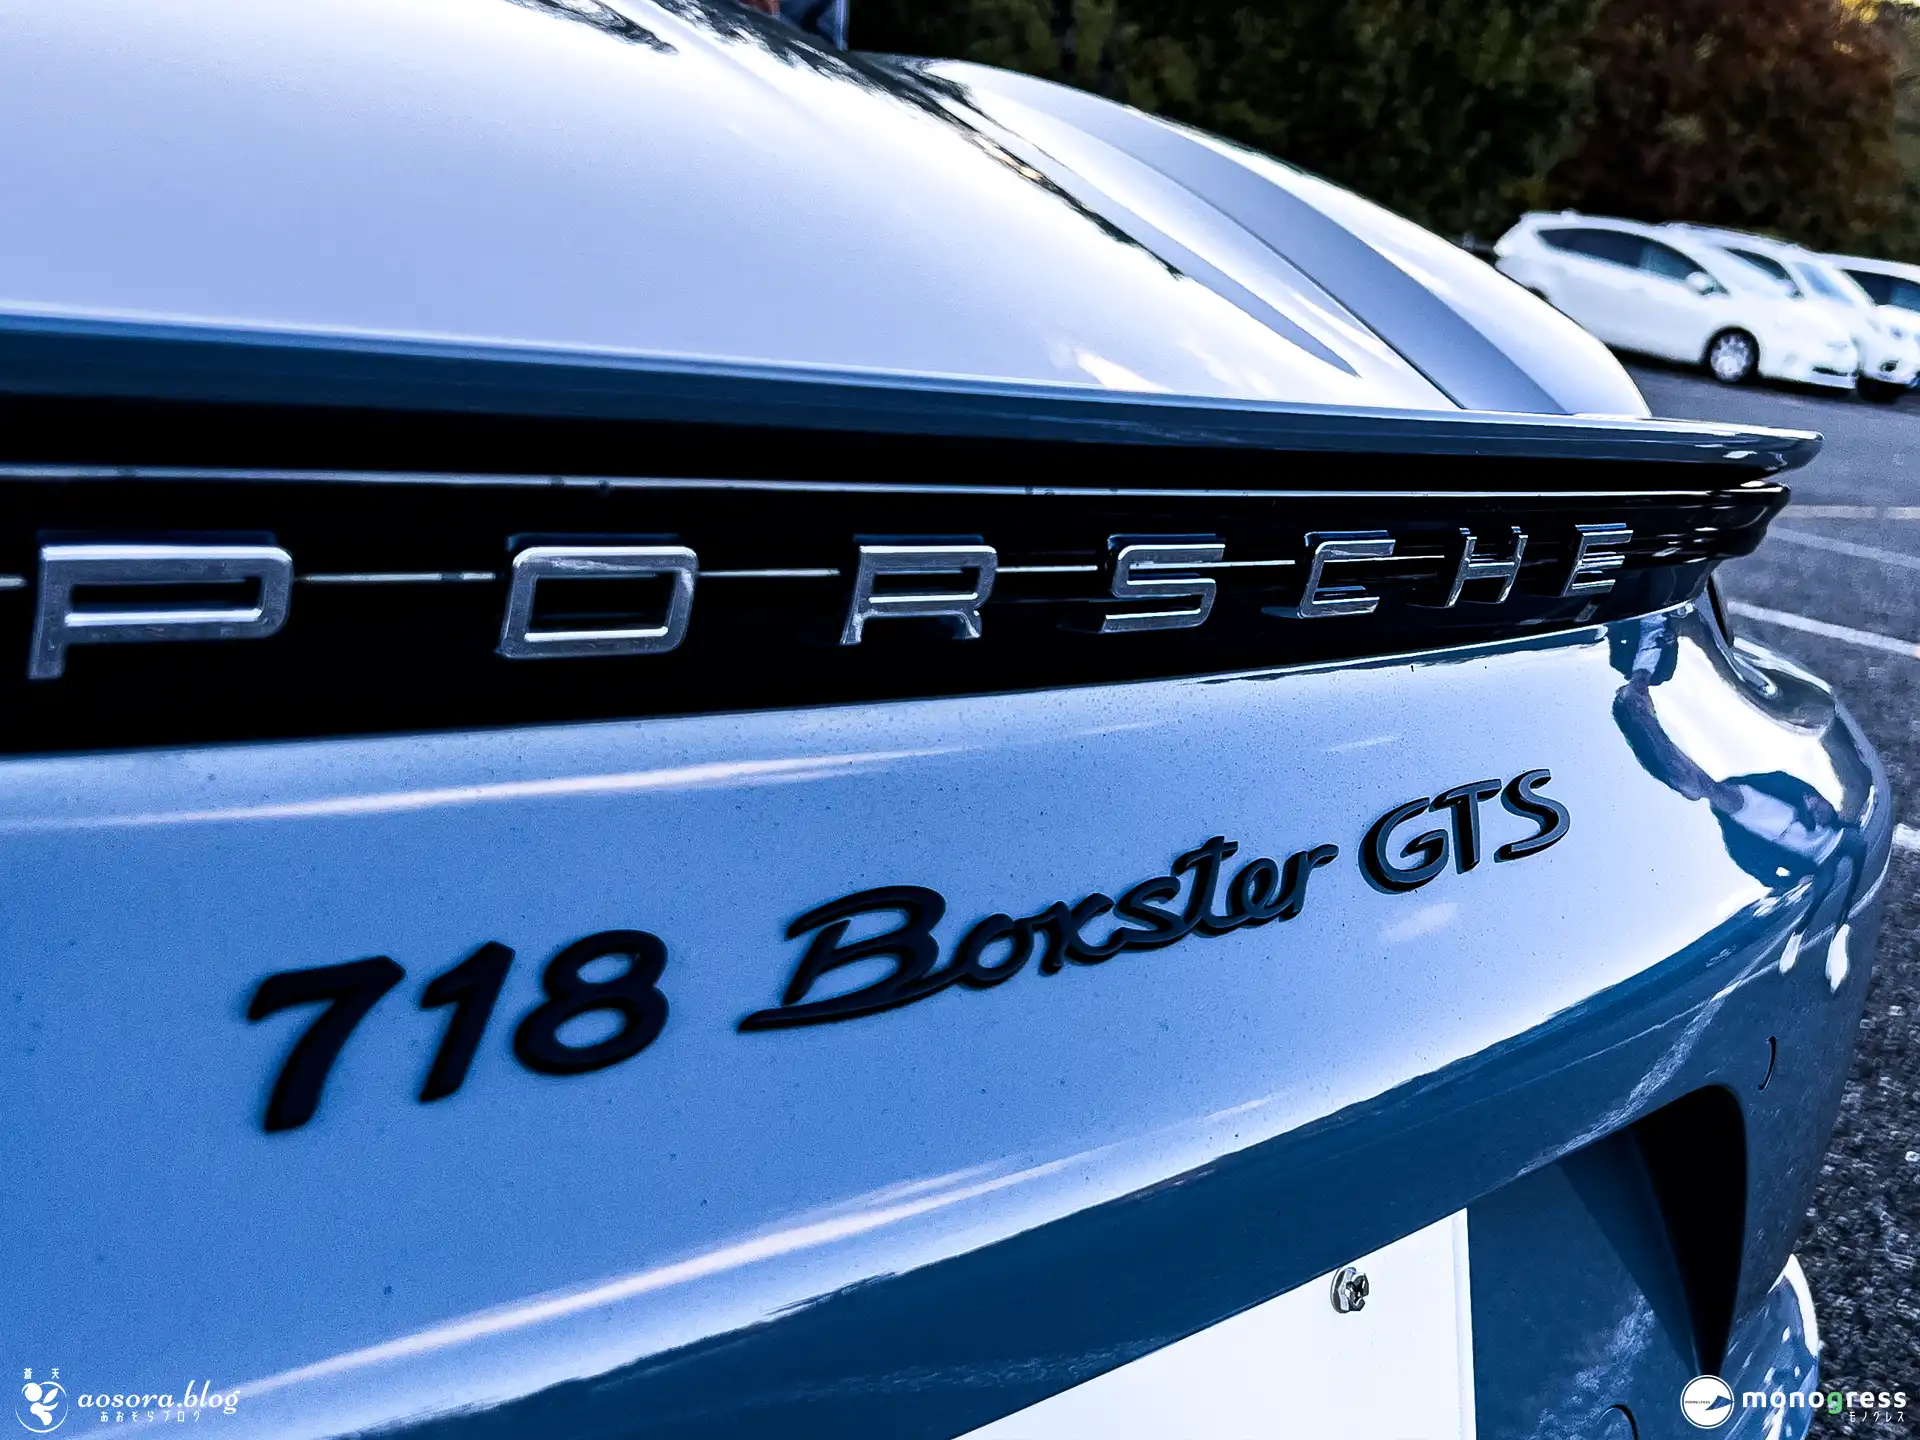 PORSHCE 718 Boxster GTS 誇らしげなエンブレム